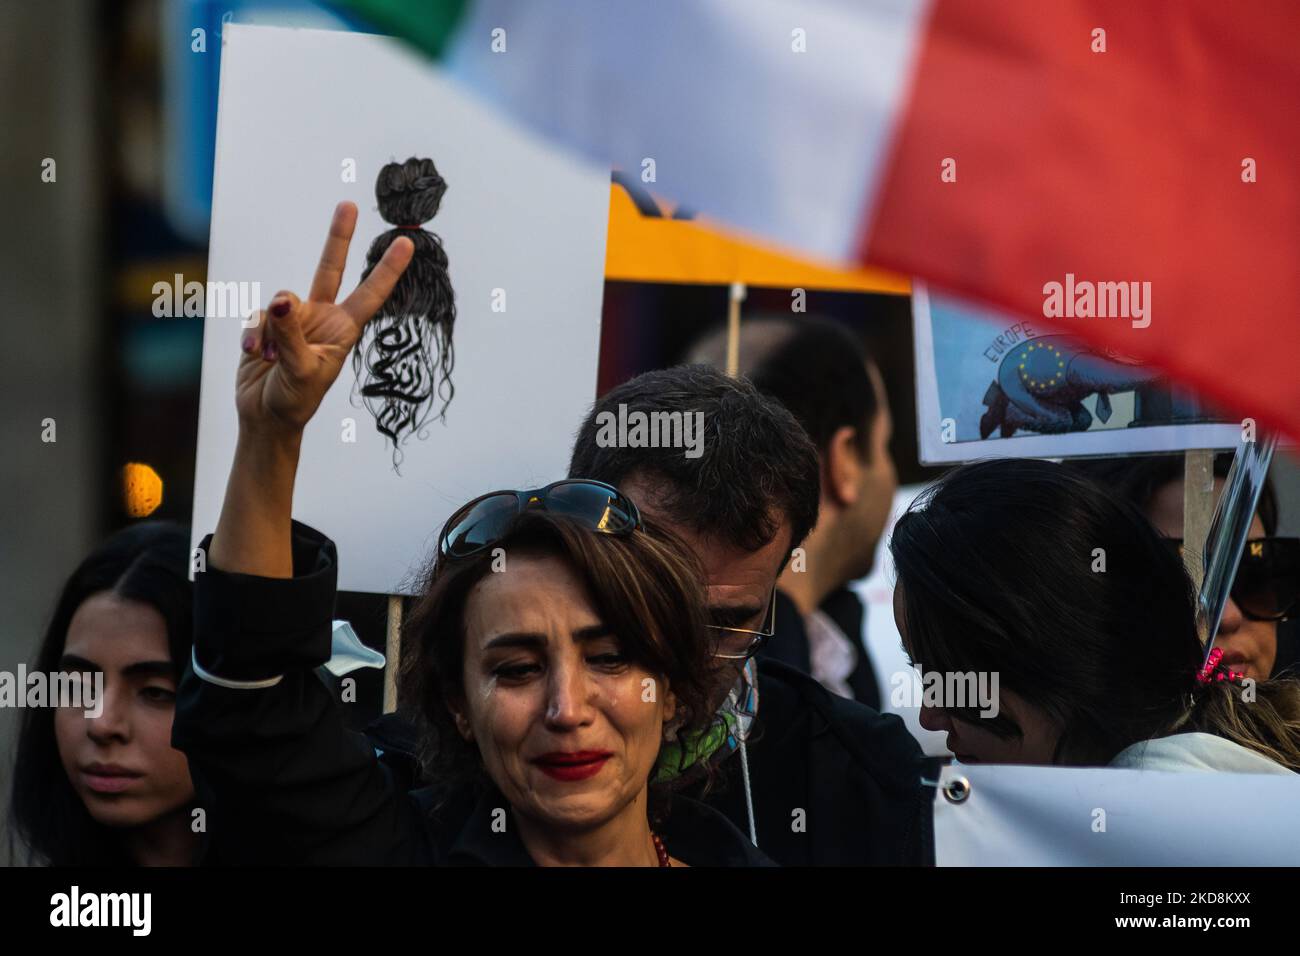 Madrid, Spagna. 05th Nov 2022. Una donna si vede piangere con lacrime sul viso durante una manifestazione davanti al Ministero degli Affari Esteri, chiedendo la libertà in Iran e contro la morte della donna iraniana Mahsa Amini. Mahsa Amini, 22 anni, è stato arrestato il 13 settembre nella capitale Teheran per aver vestito in modo improprio indossando un velo mal riposto. Morì tre giorni dopo in una stazione di polizia dove era detenuta. Credit: Marcos del Mazo/Alamy Live News Foto Stock